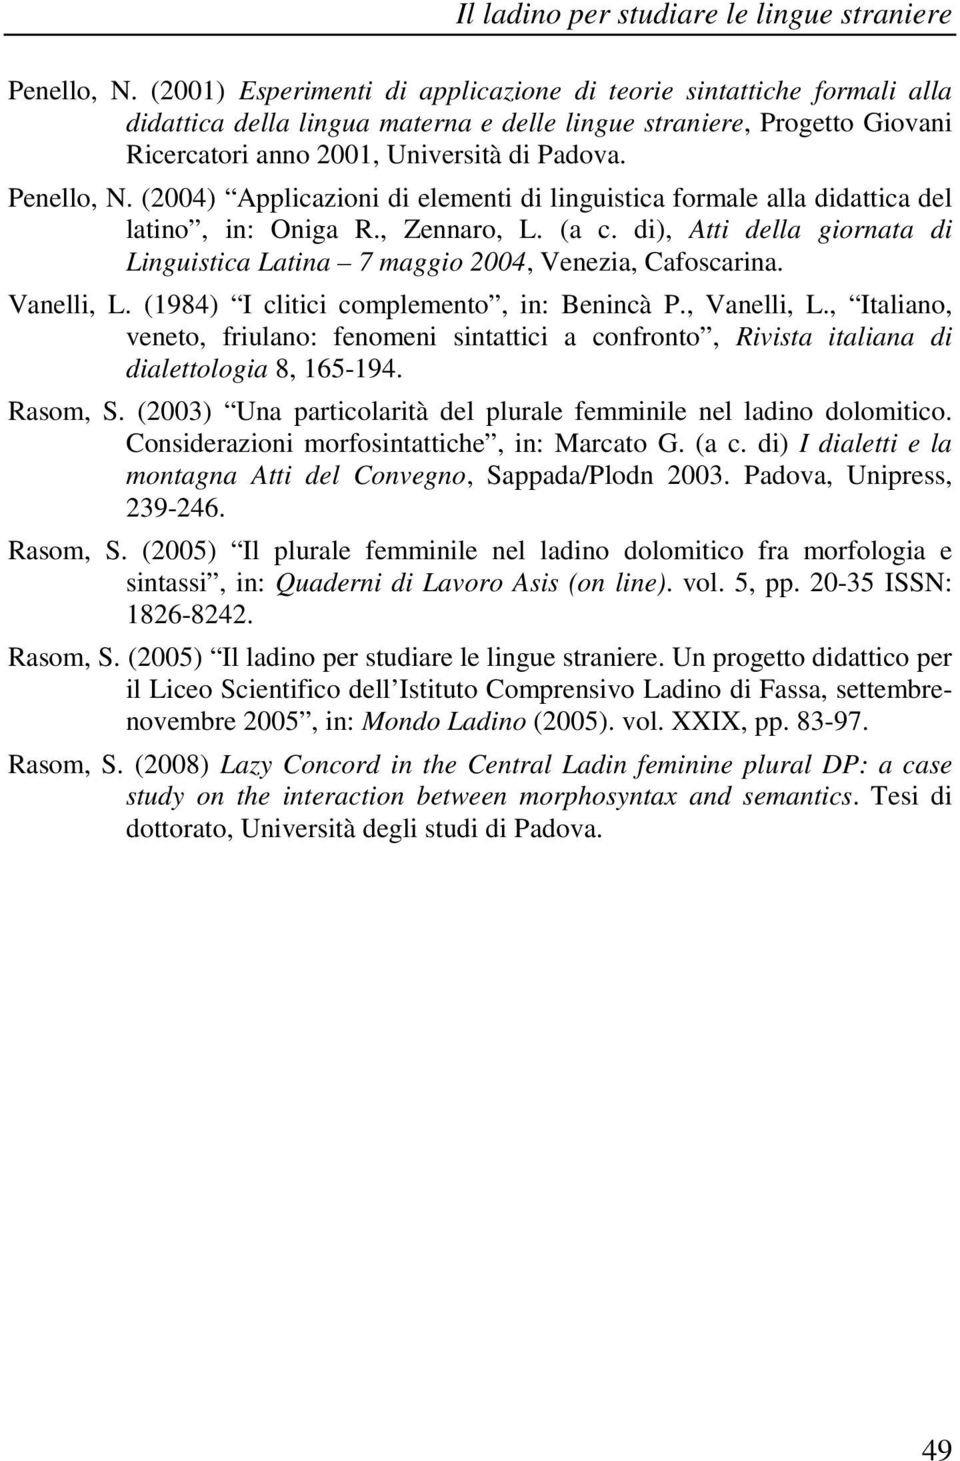 (2004) Applicazioni di elementi di linguistica formale alla didattica del latino, in: Oniga R., Zennaro, L. (a c. di), Atti della giornata di Linguistica Latina 7 maggio 2004, Venezia, Cafoscarina.